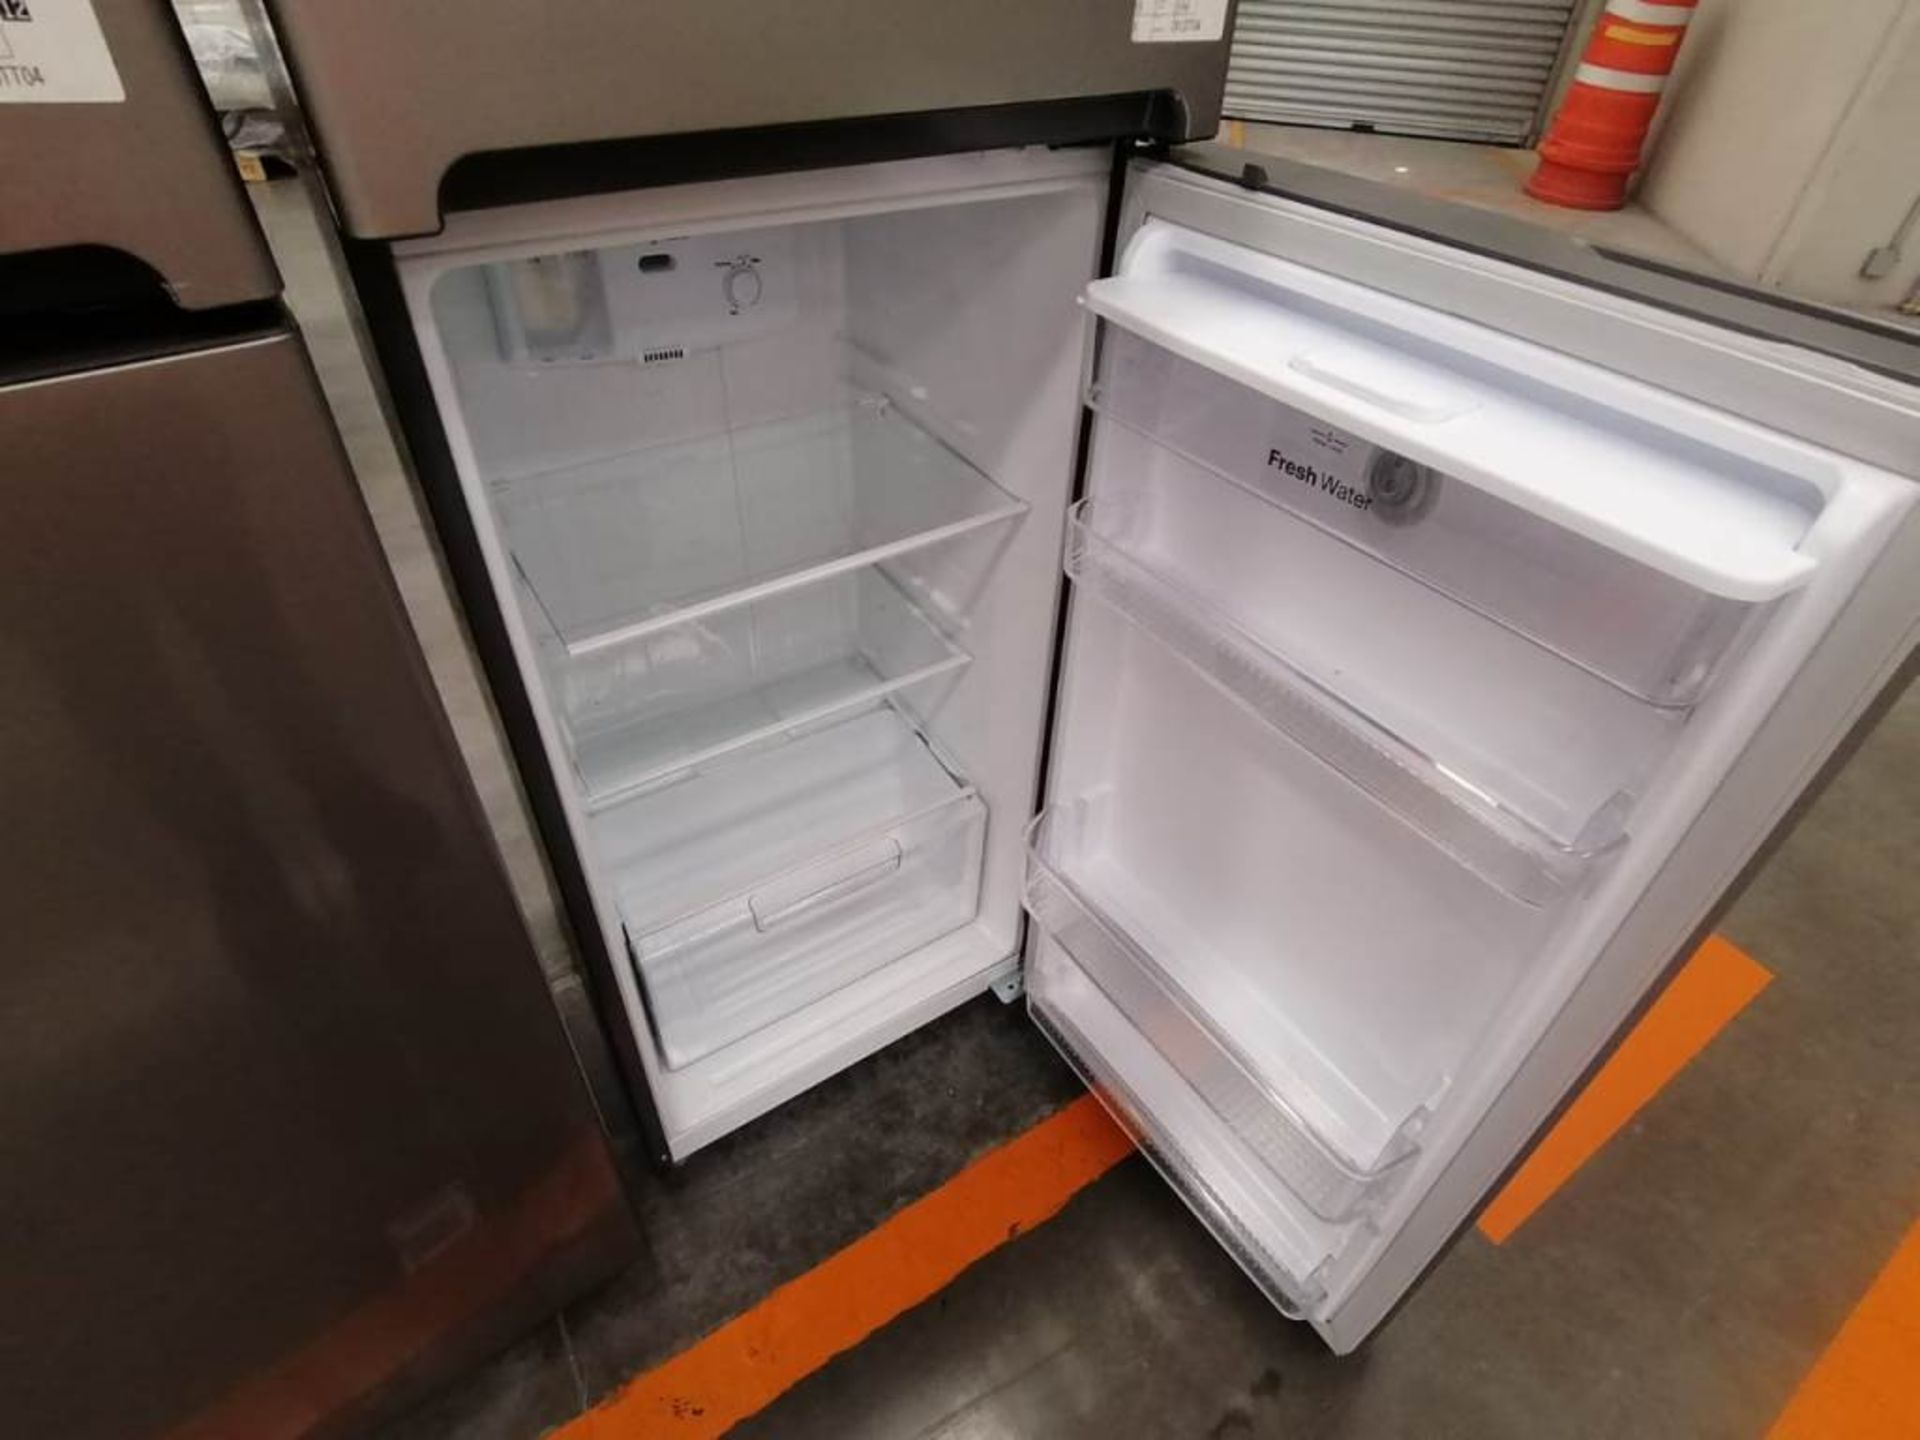 Lote de 2 Refrigeradores, Contiene 1 Refrigerador Marca Winia, Color Gris, Dos Puertas, Despachador - Image 9 of 13